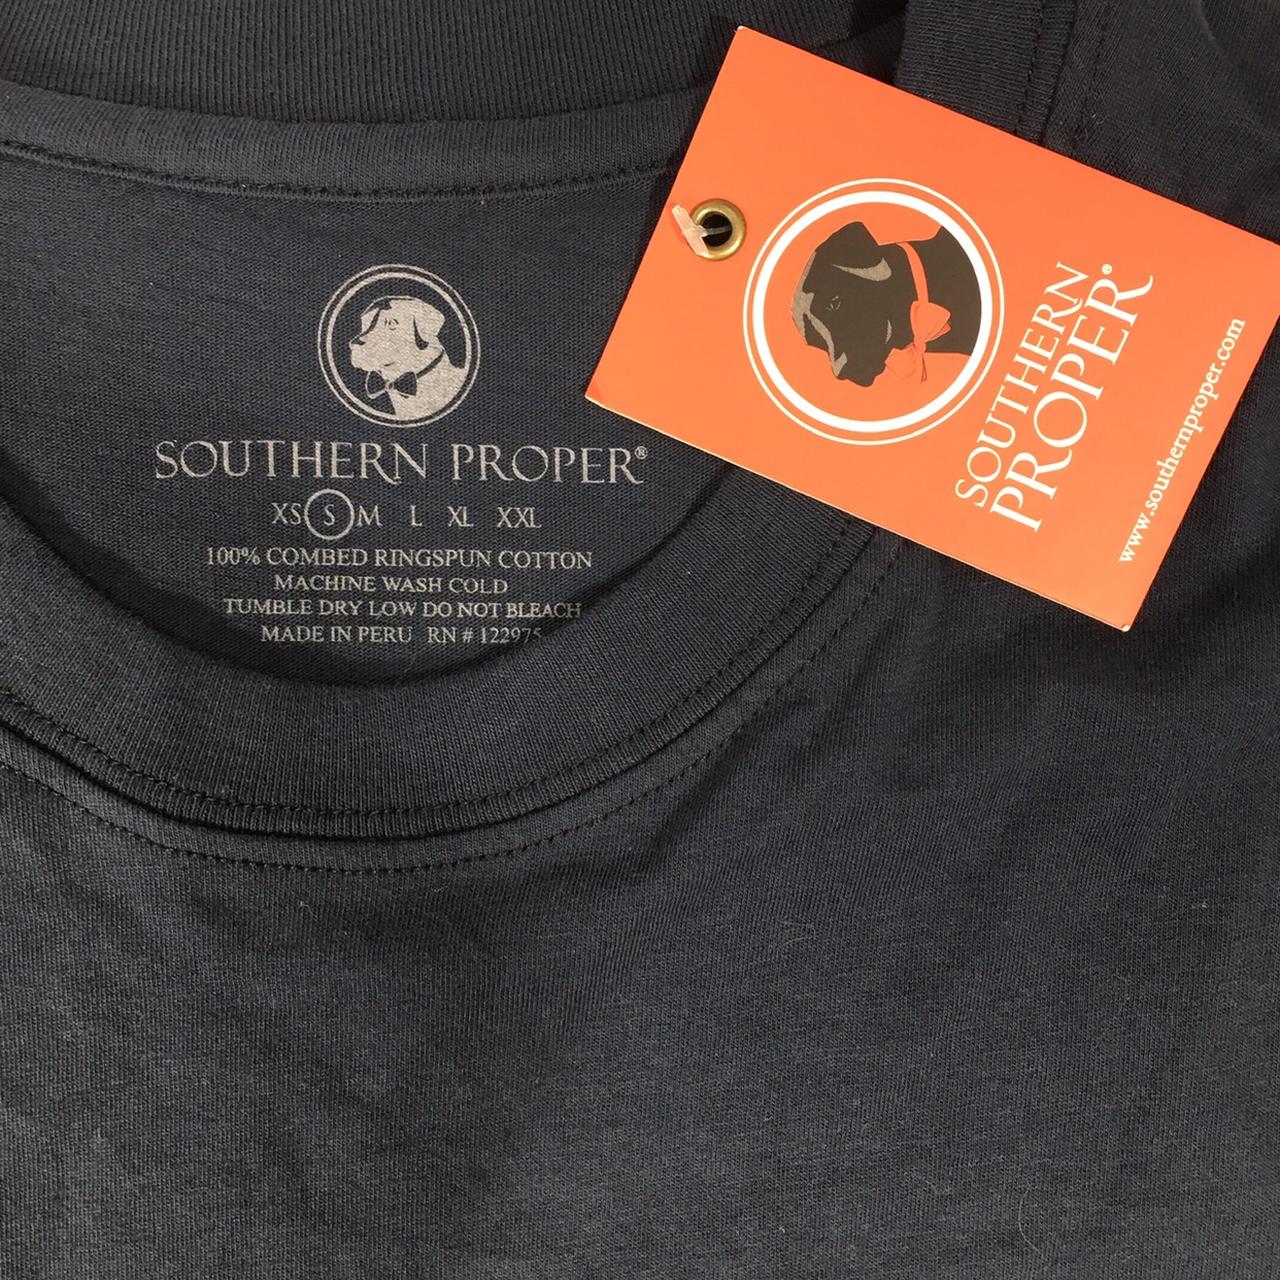 southern proper cotton logo